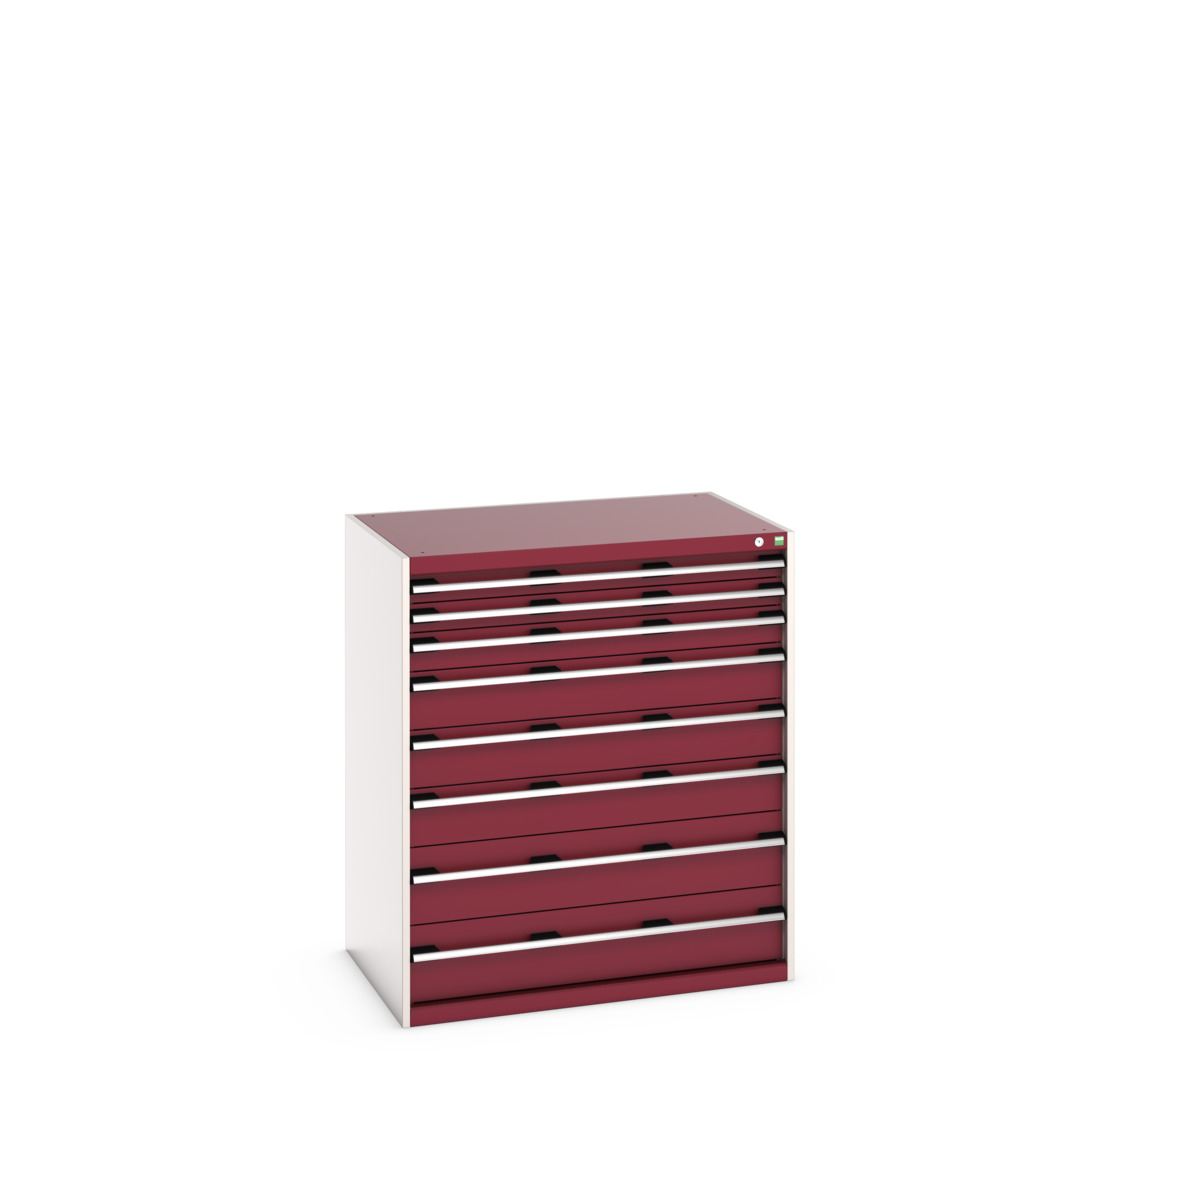 40029032.24V - cubio drawer cabinet